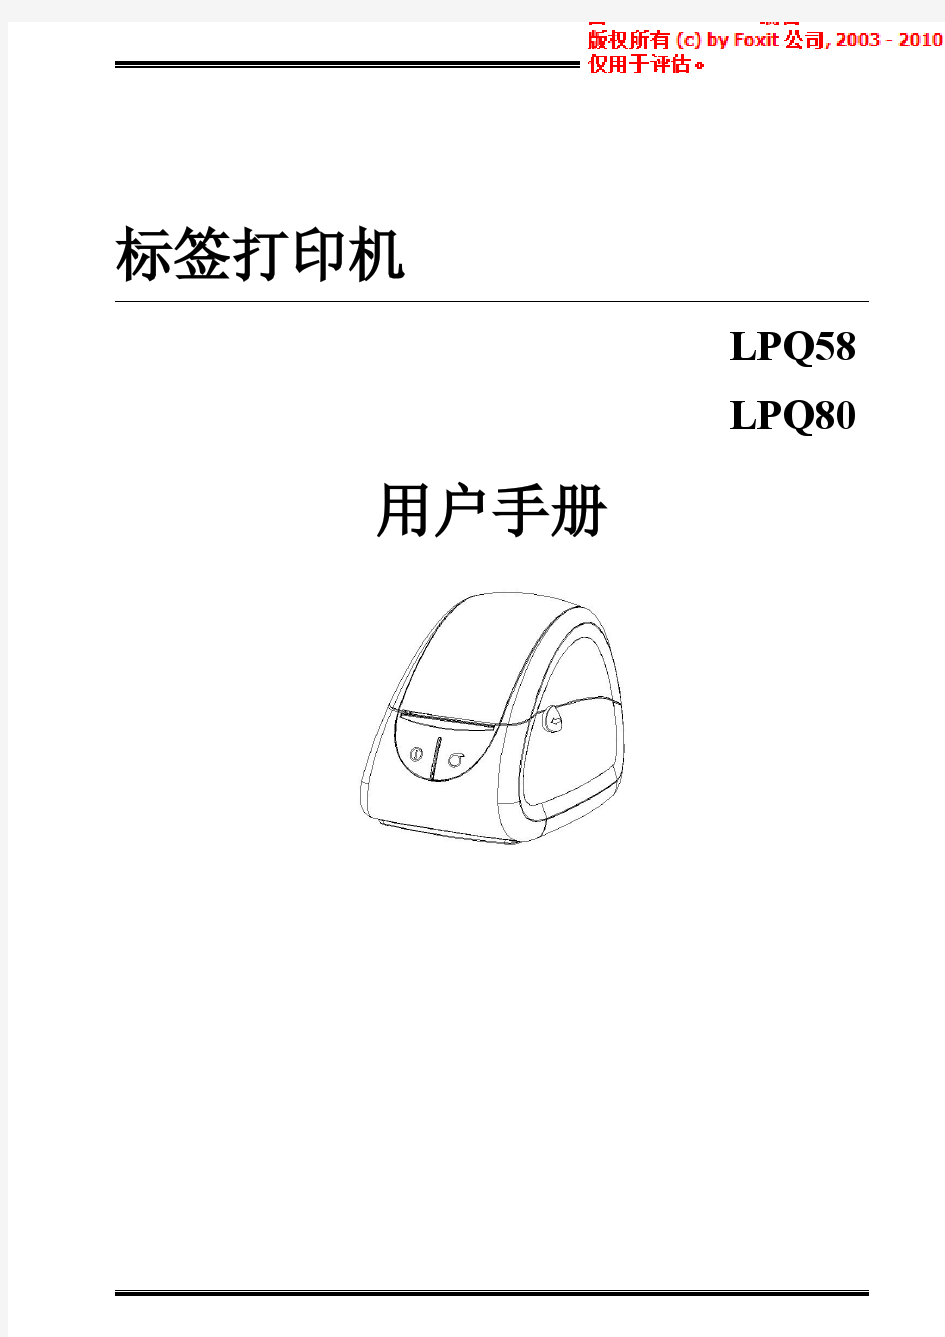 汉印条码标签热敏打印机LPQ58和LPQ80用户手册